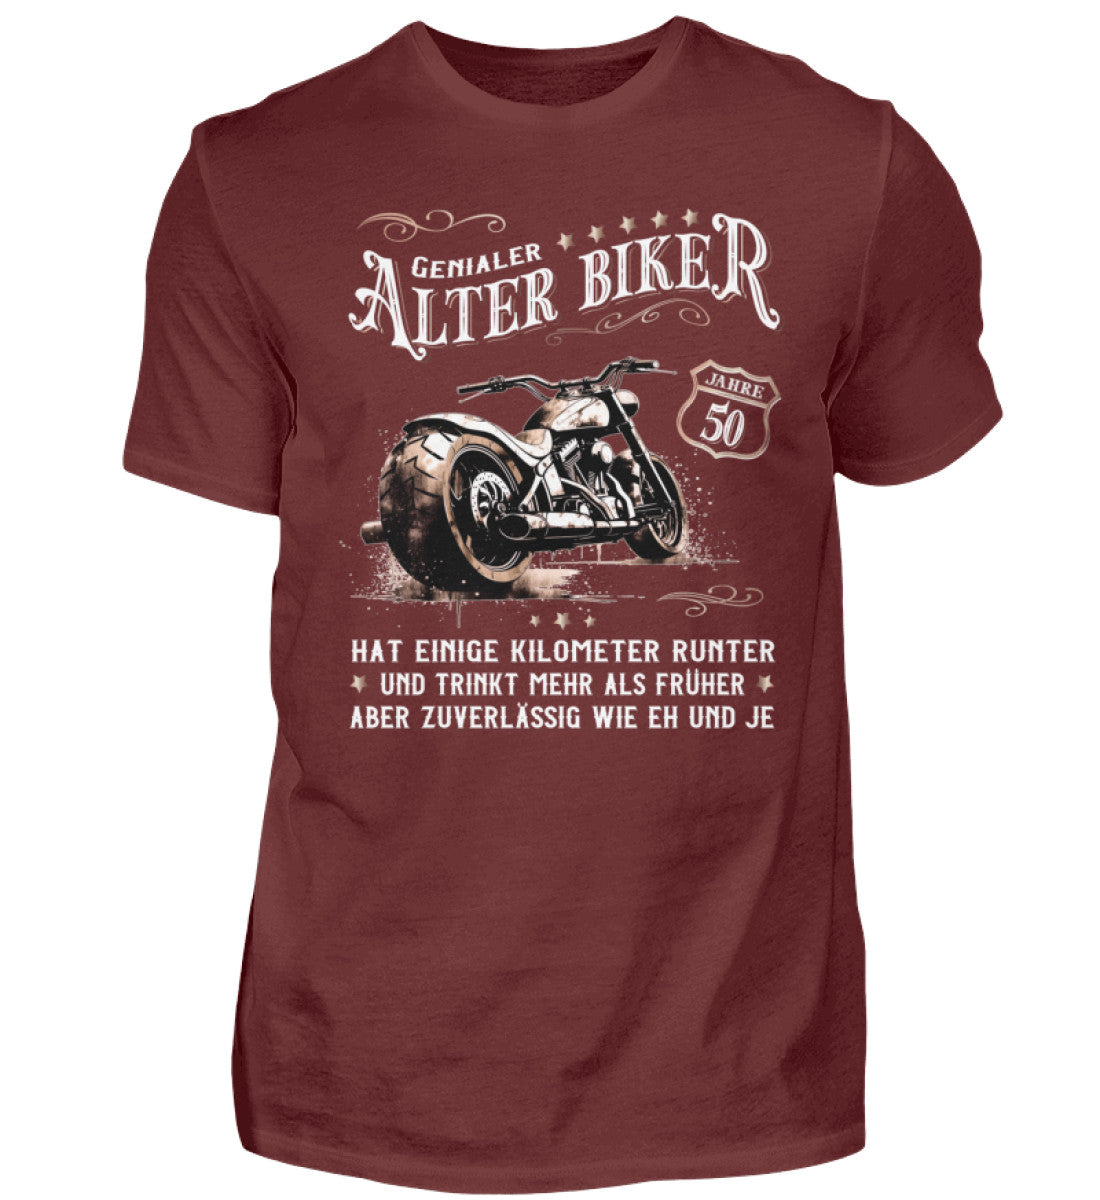 Ein Biker T-Shirt zum Geburtstag für Motorradfahrer von Wingbikers mit dem Aufdruck, Alter Biker - 50 Jahre - Einige Kilometer runter, trinkt mehr - aber zuverlässig wie eh und je - in weinrot.